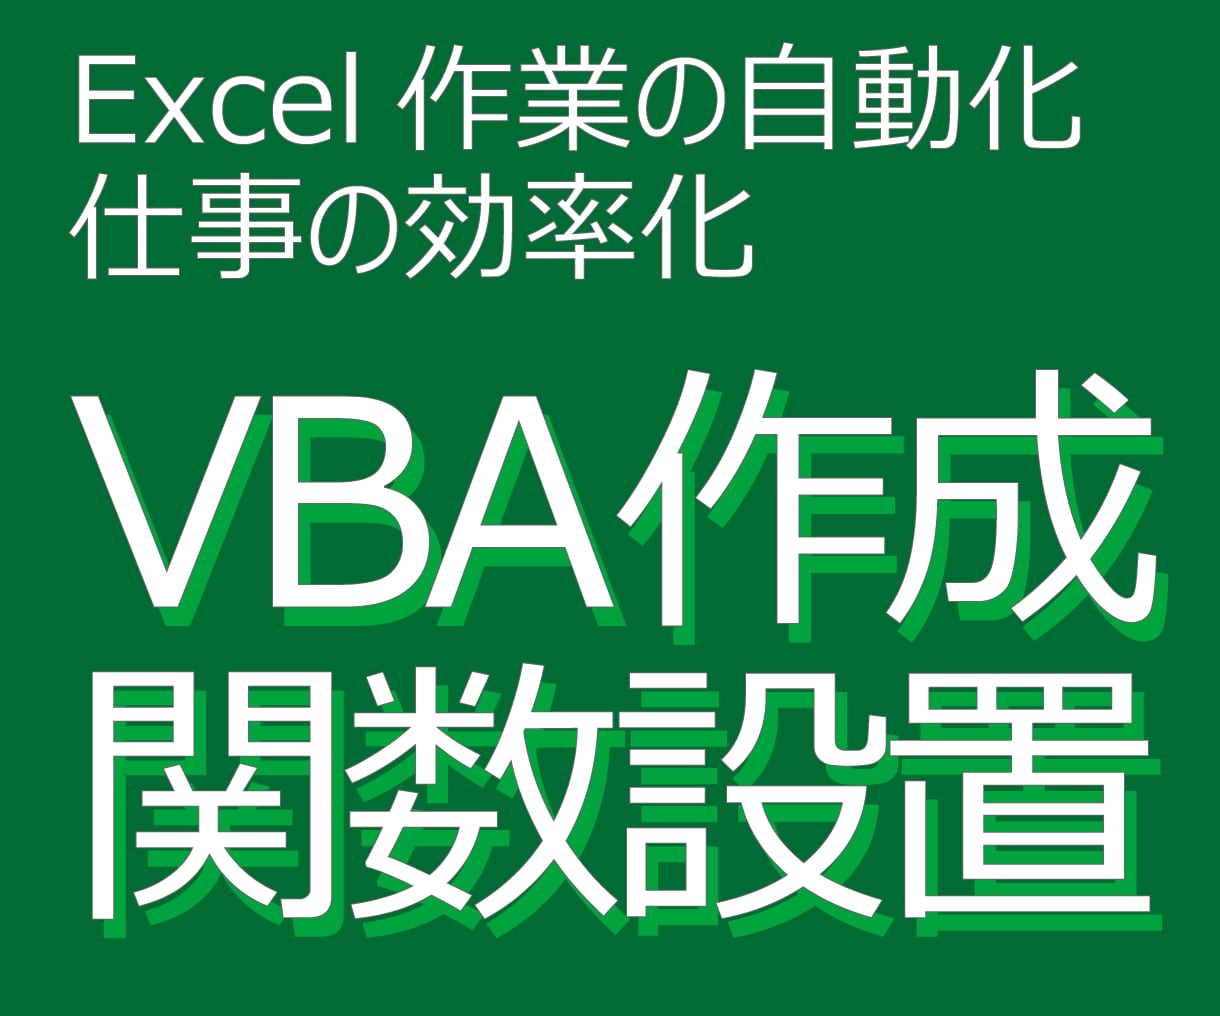 Excelの関数設置およびVBAでの自動化をします エクセル作業をめんどくさいと思っているあなたへ！ イメージ1